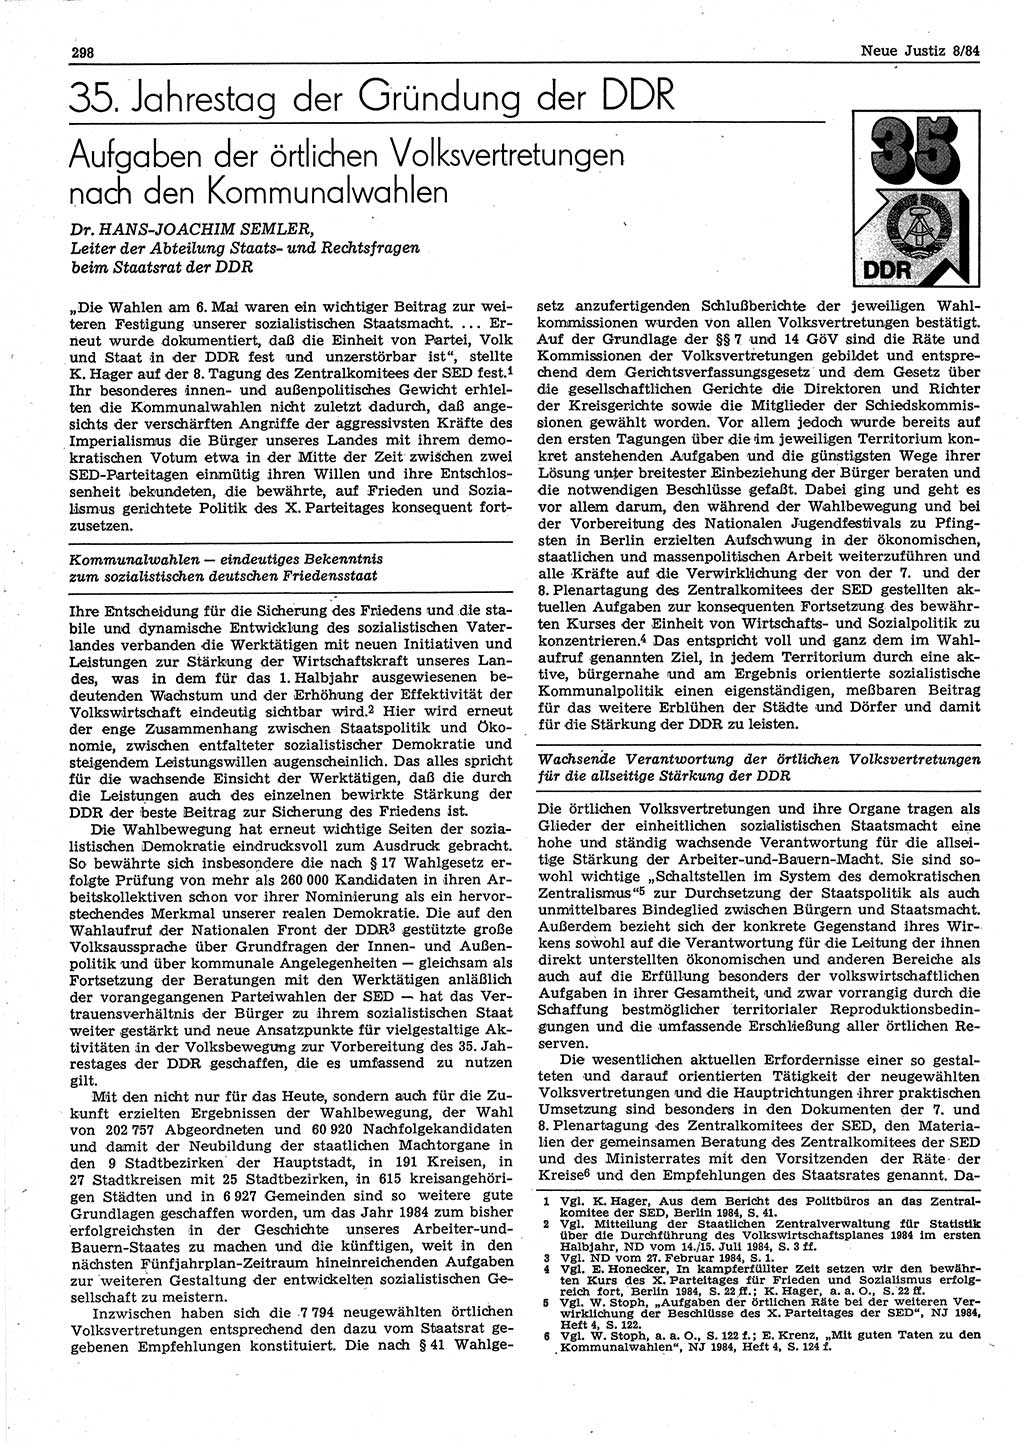 Neue Justiz (NJ), Zeitschrift für sozialistisches Recht und Gesetzlichkeit [Deutsche Demokratische Republik (DDR)], 38. Jahrgang 1984, Seite 298 (NJ DDR 1984, S. 298)